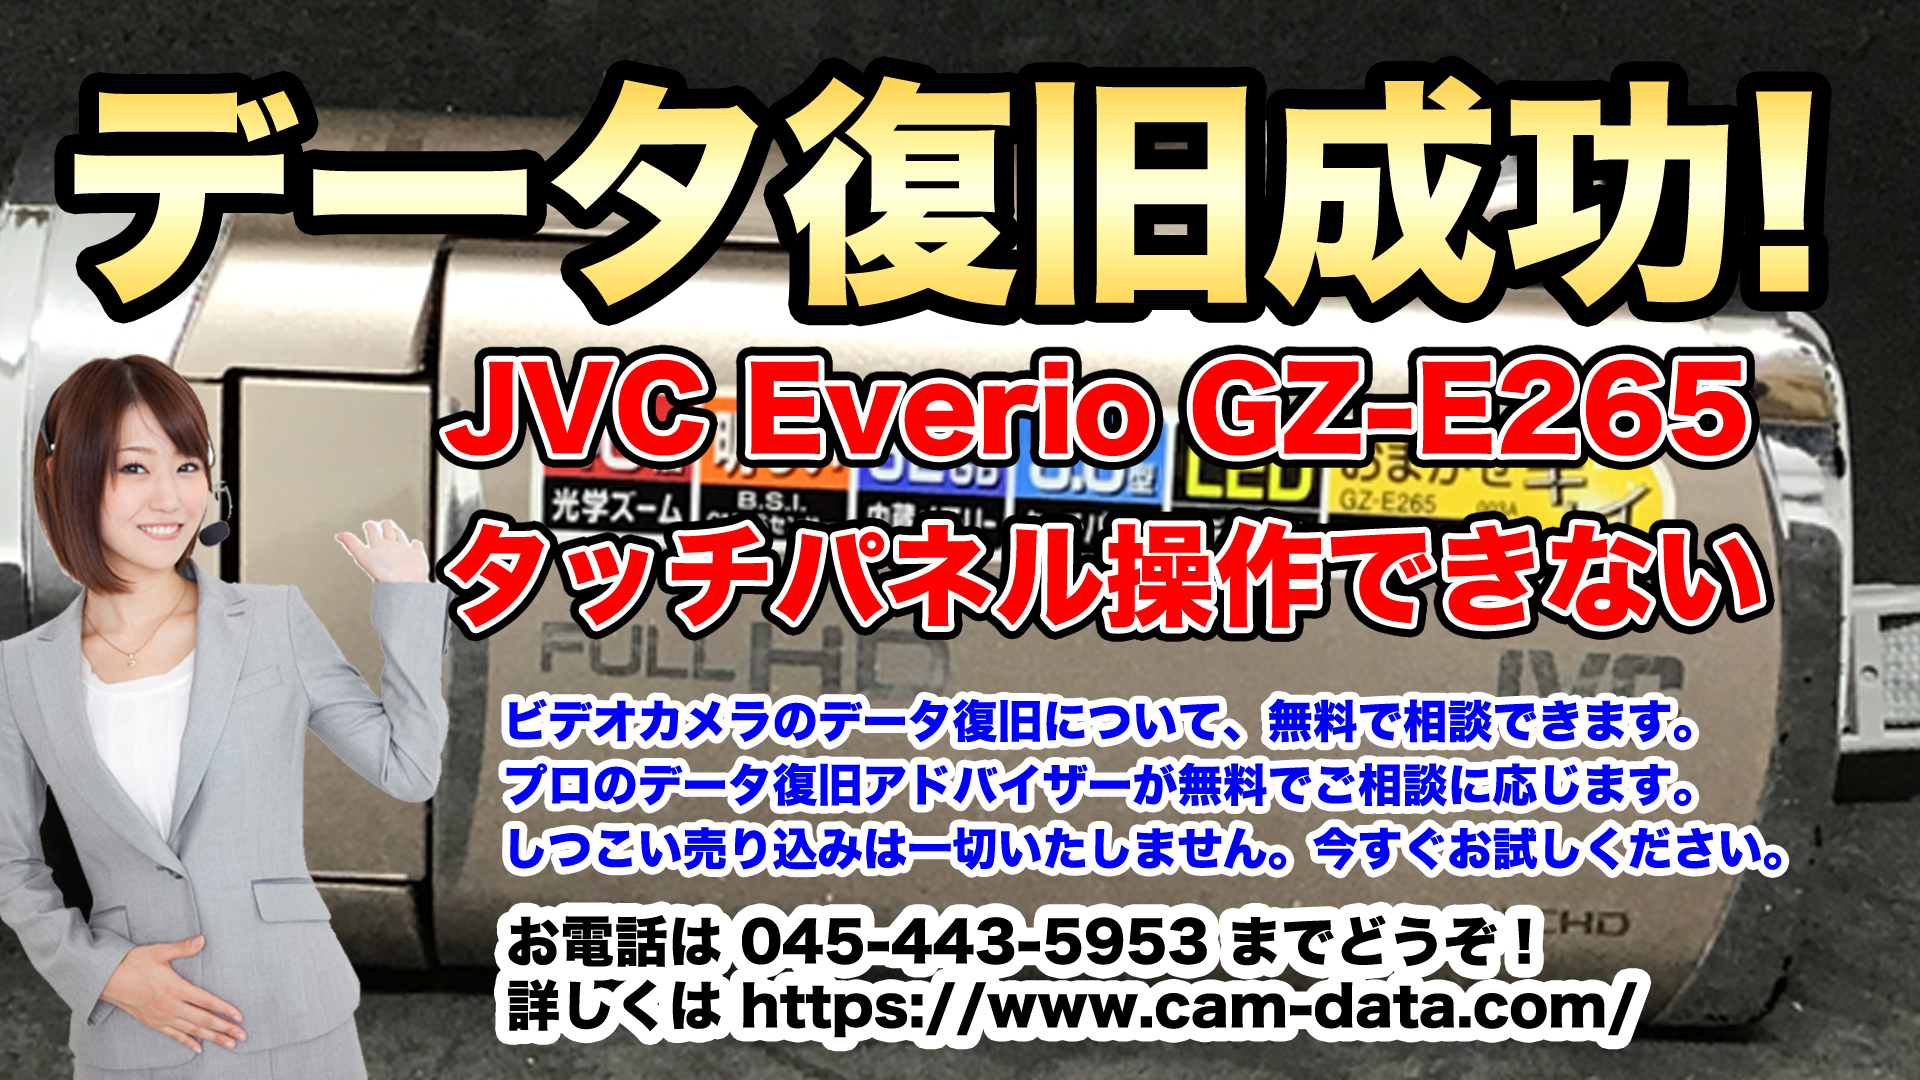 タッチパネル操作ができないビデオカメラ JVC Everio GZ-E265